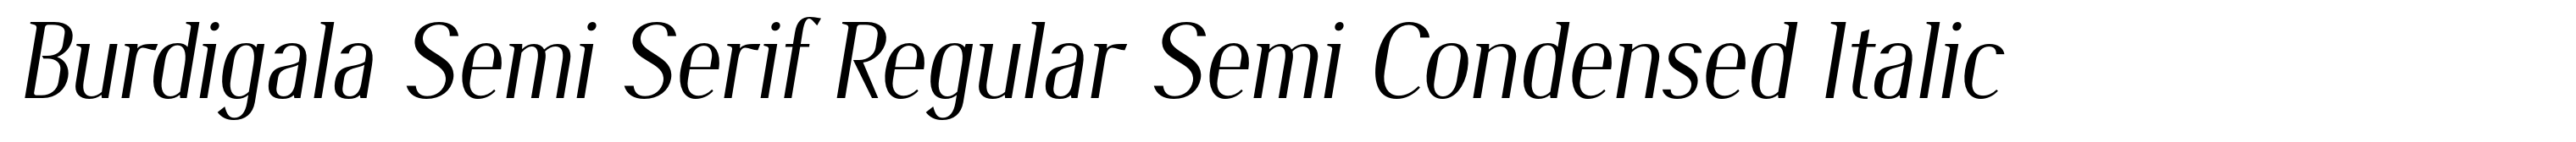 Burdigala Semi Serif Regular Semi Condensed Italic